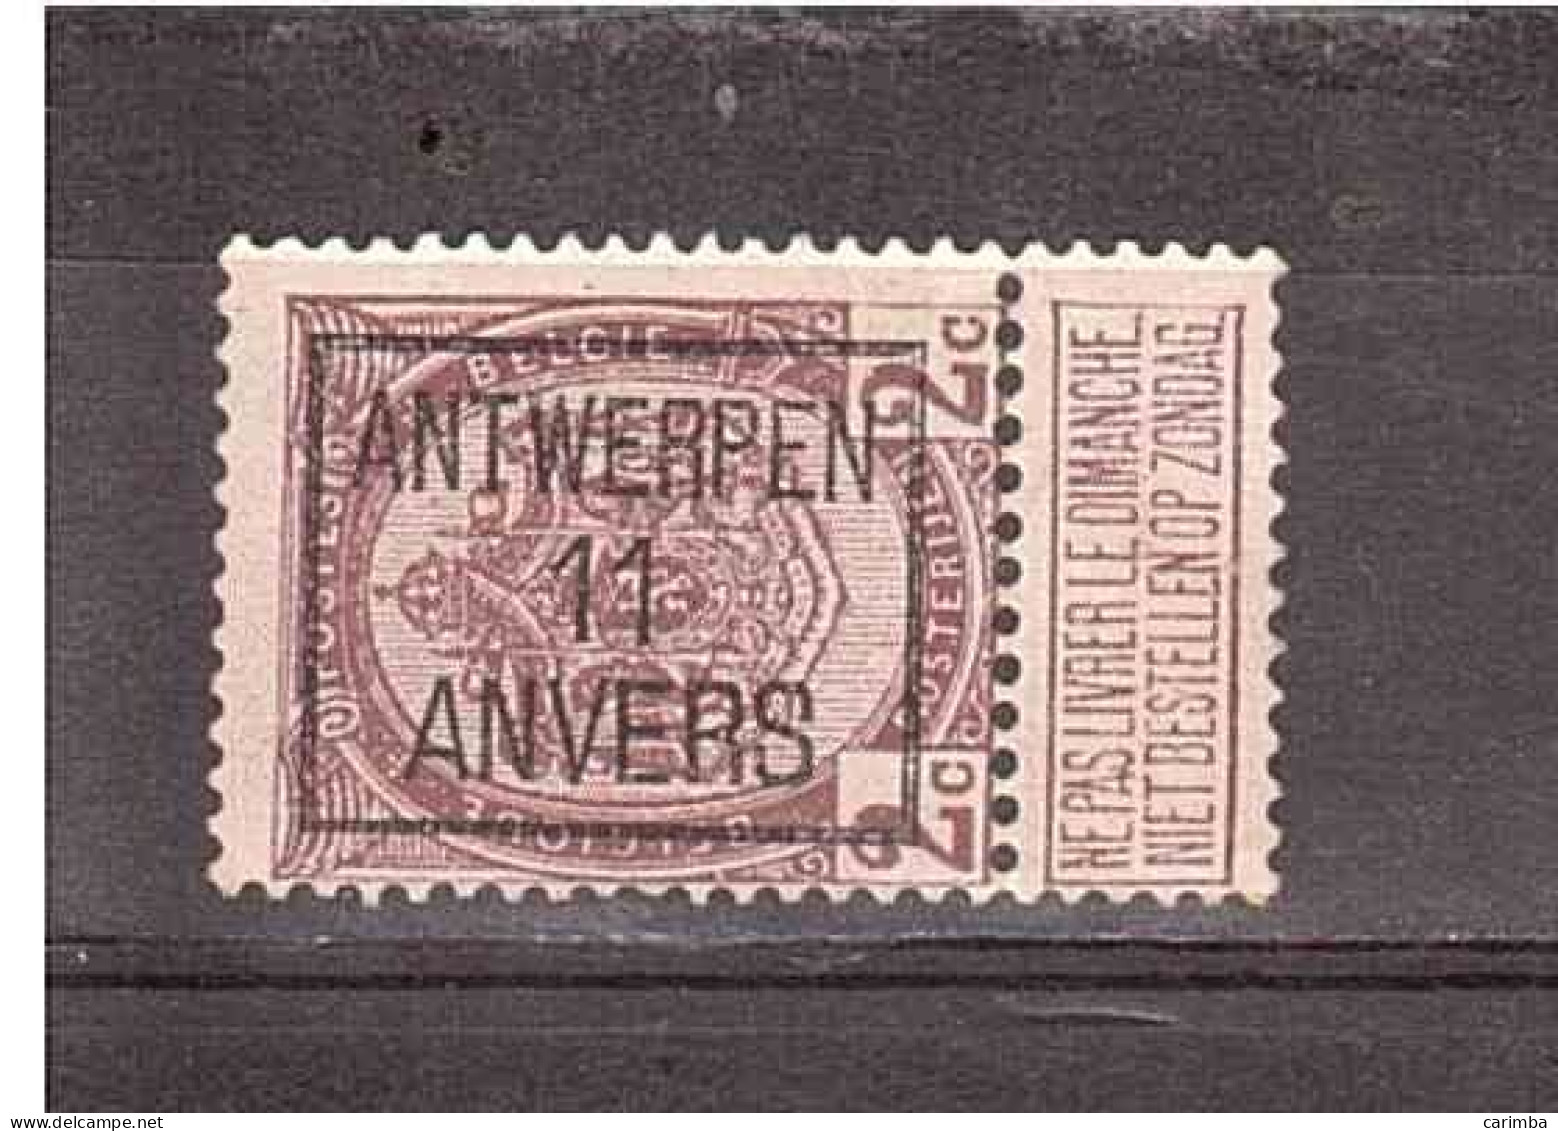 ANTWERPEN 11 ANVERS - Typografisch 1906-12 (Wapenschild)